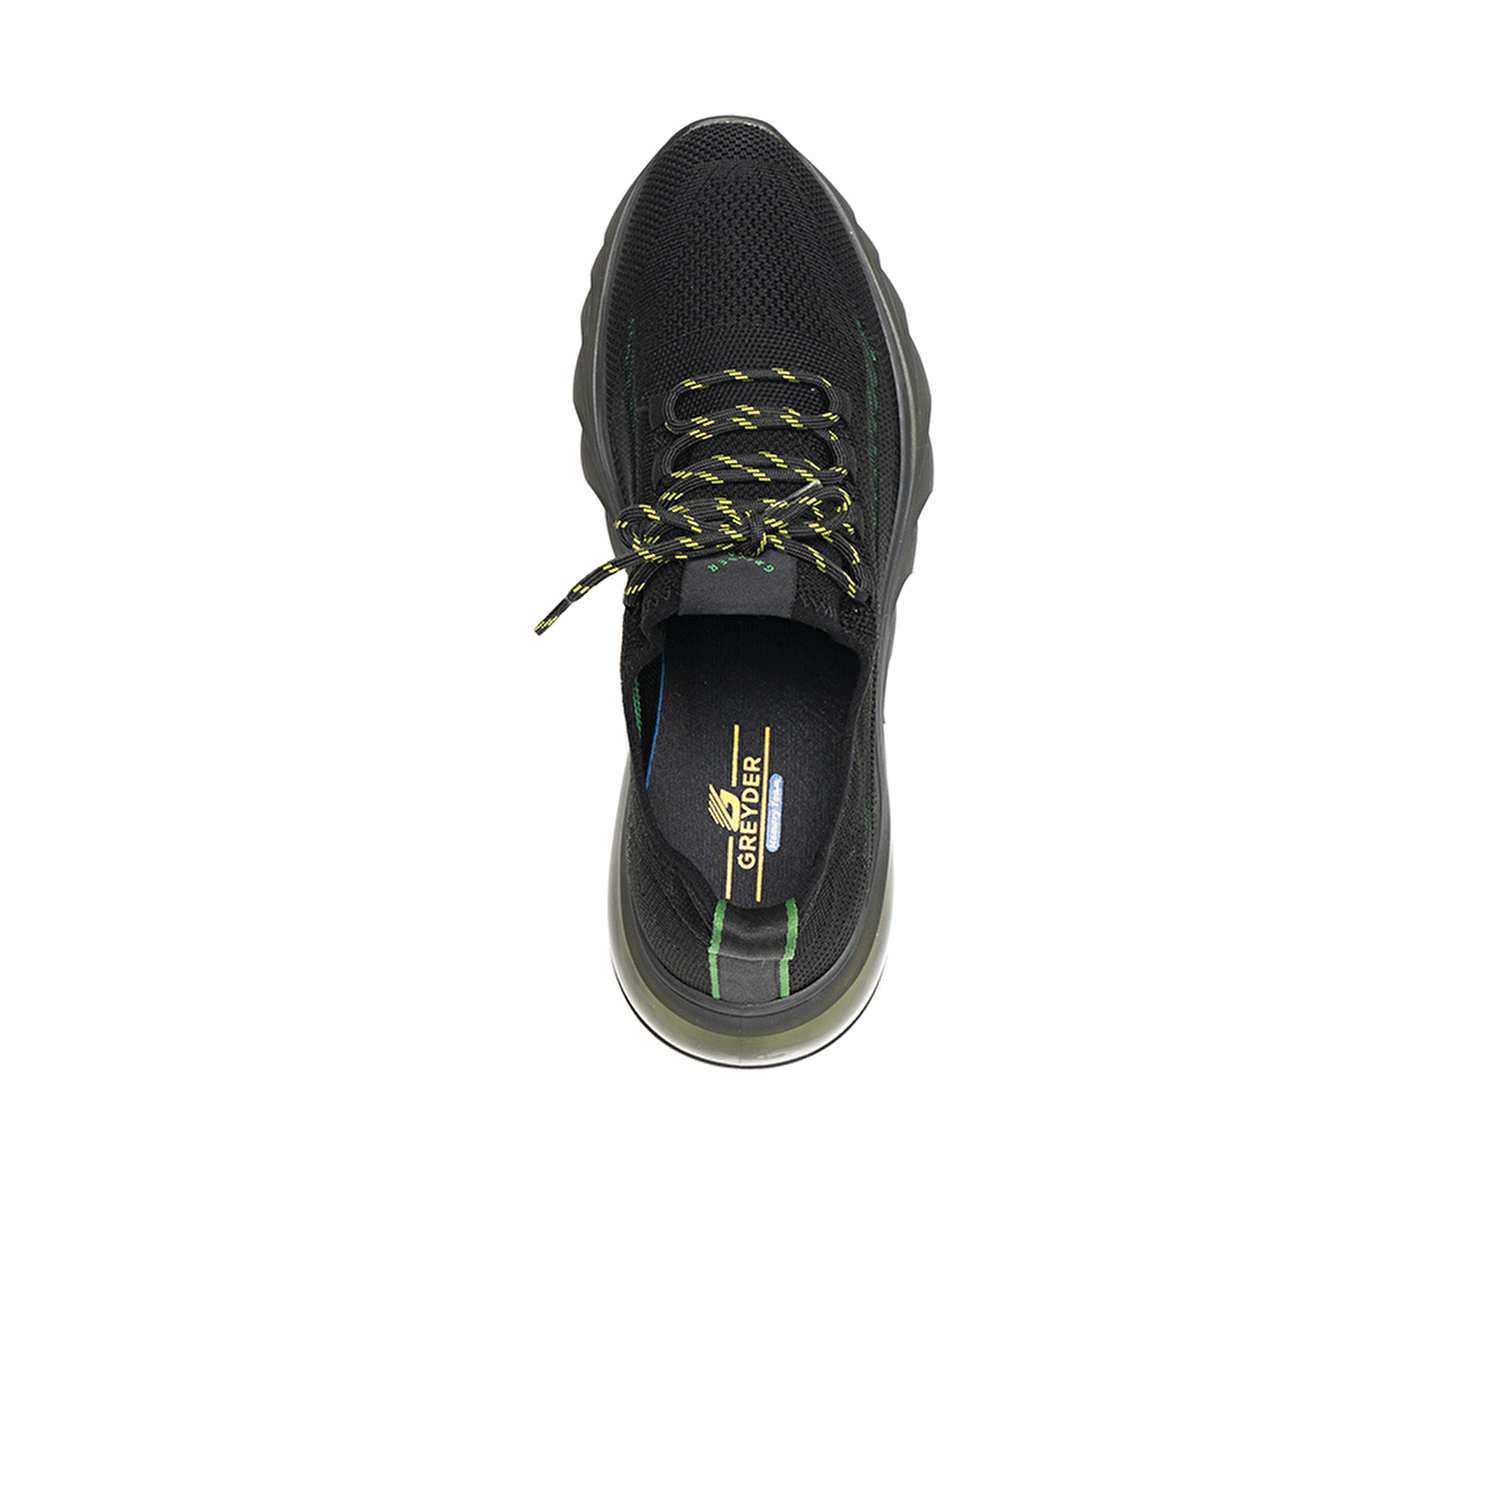 Erkek Siyah Yeşil Hakiki Deri Spor Ayakkabı 2Y1SA15381-5